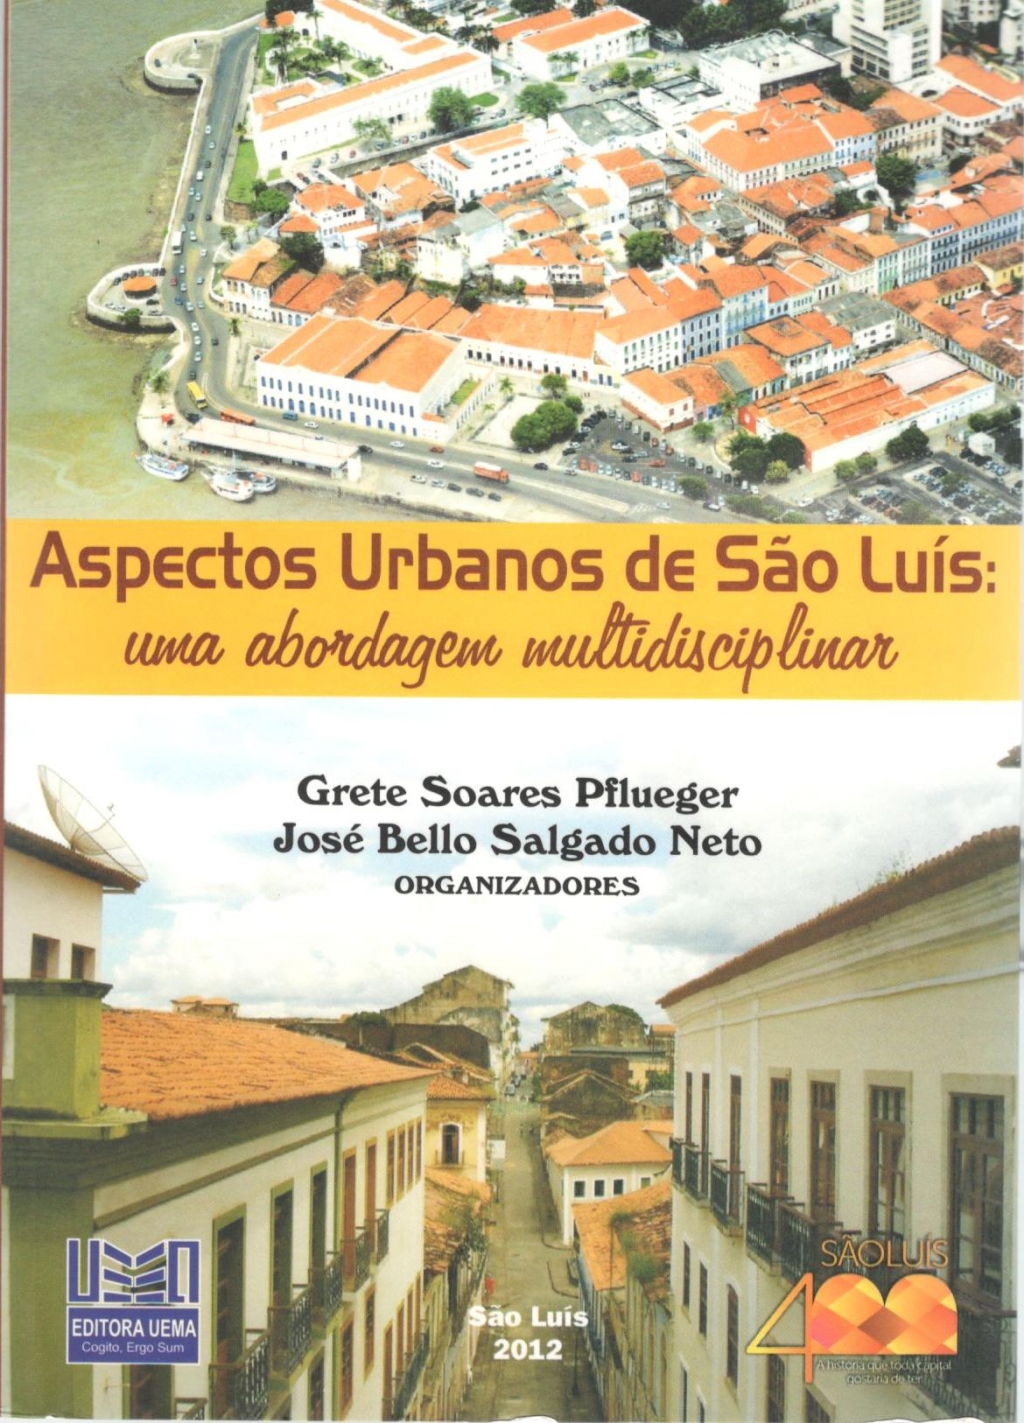 Coleção 400 Anos - Aspectos urbanos de São Luís:  uma abordagem multidisciplinar (DISPONÍVEL PARA DOWNLOAD)